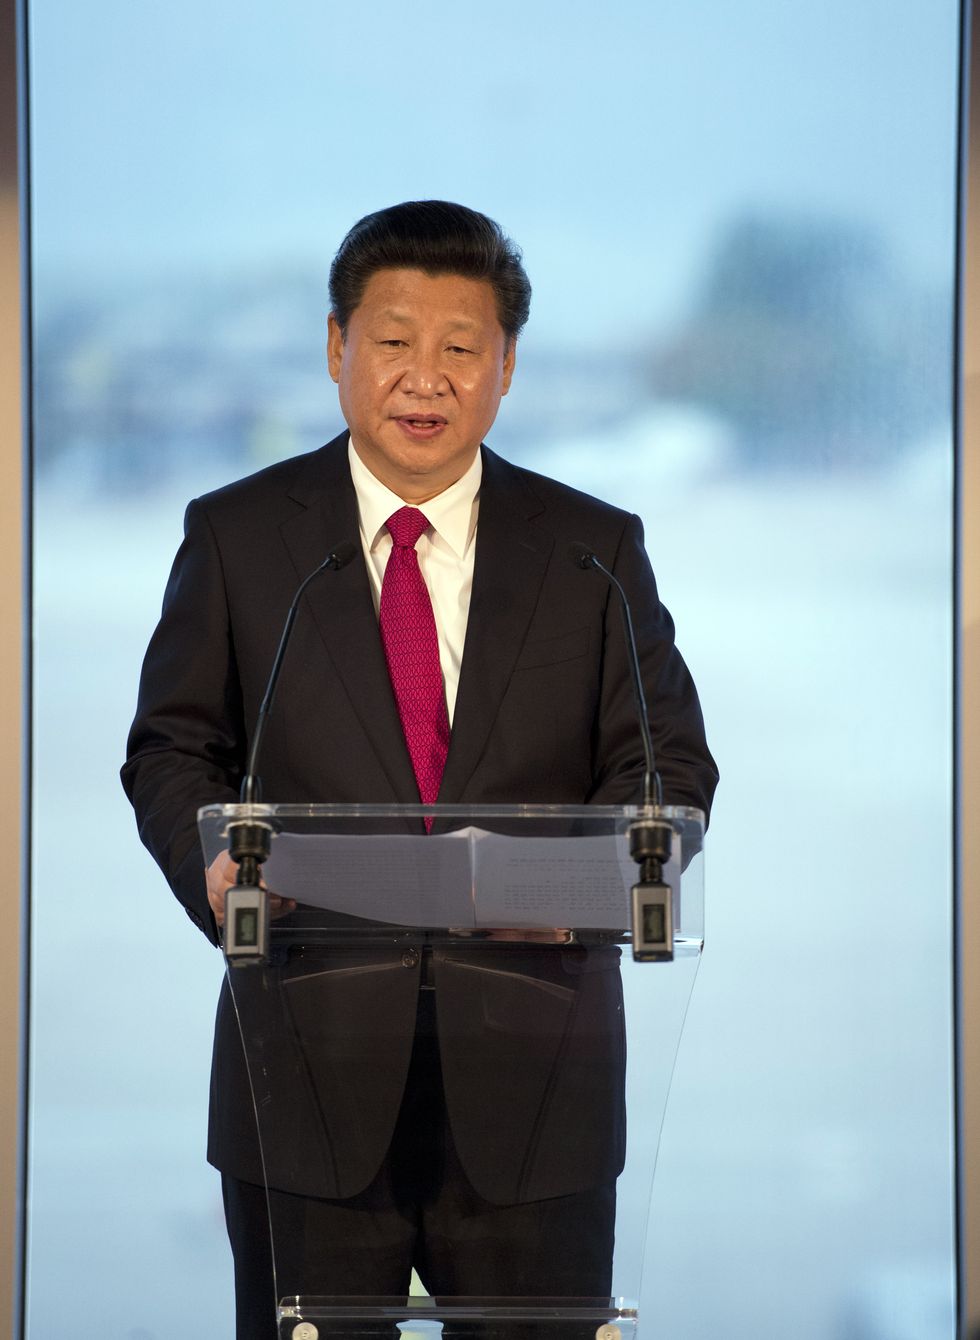 \u200bPresident Xi Jinping